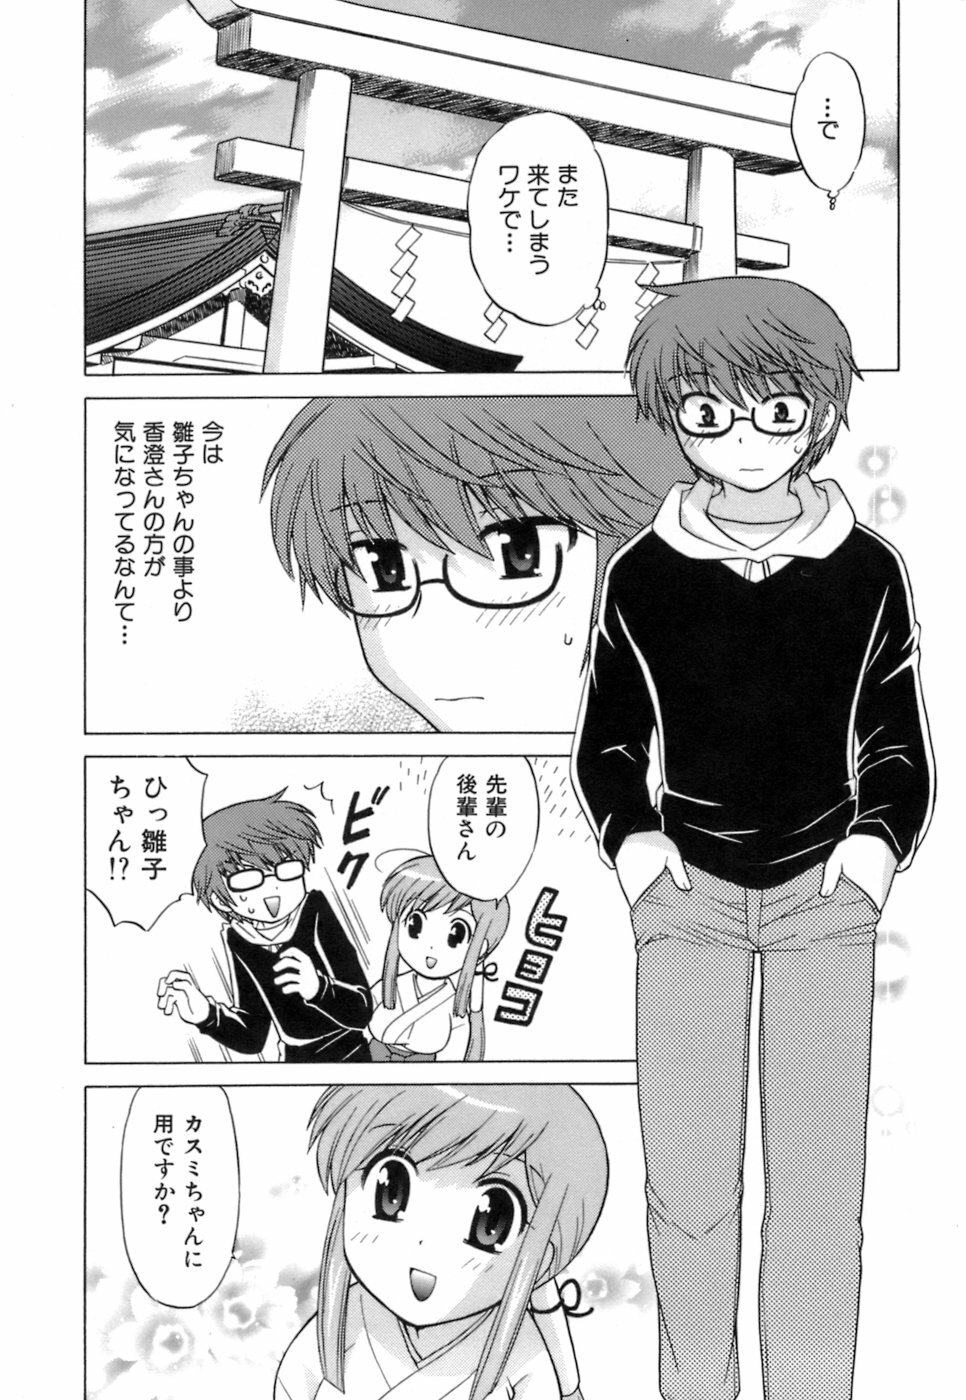 [Kotono Wakako] Miko Moe 1 page 54 full